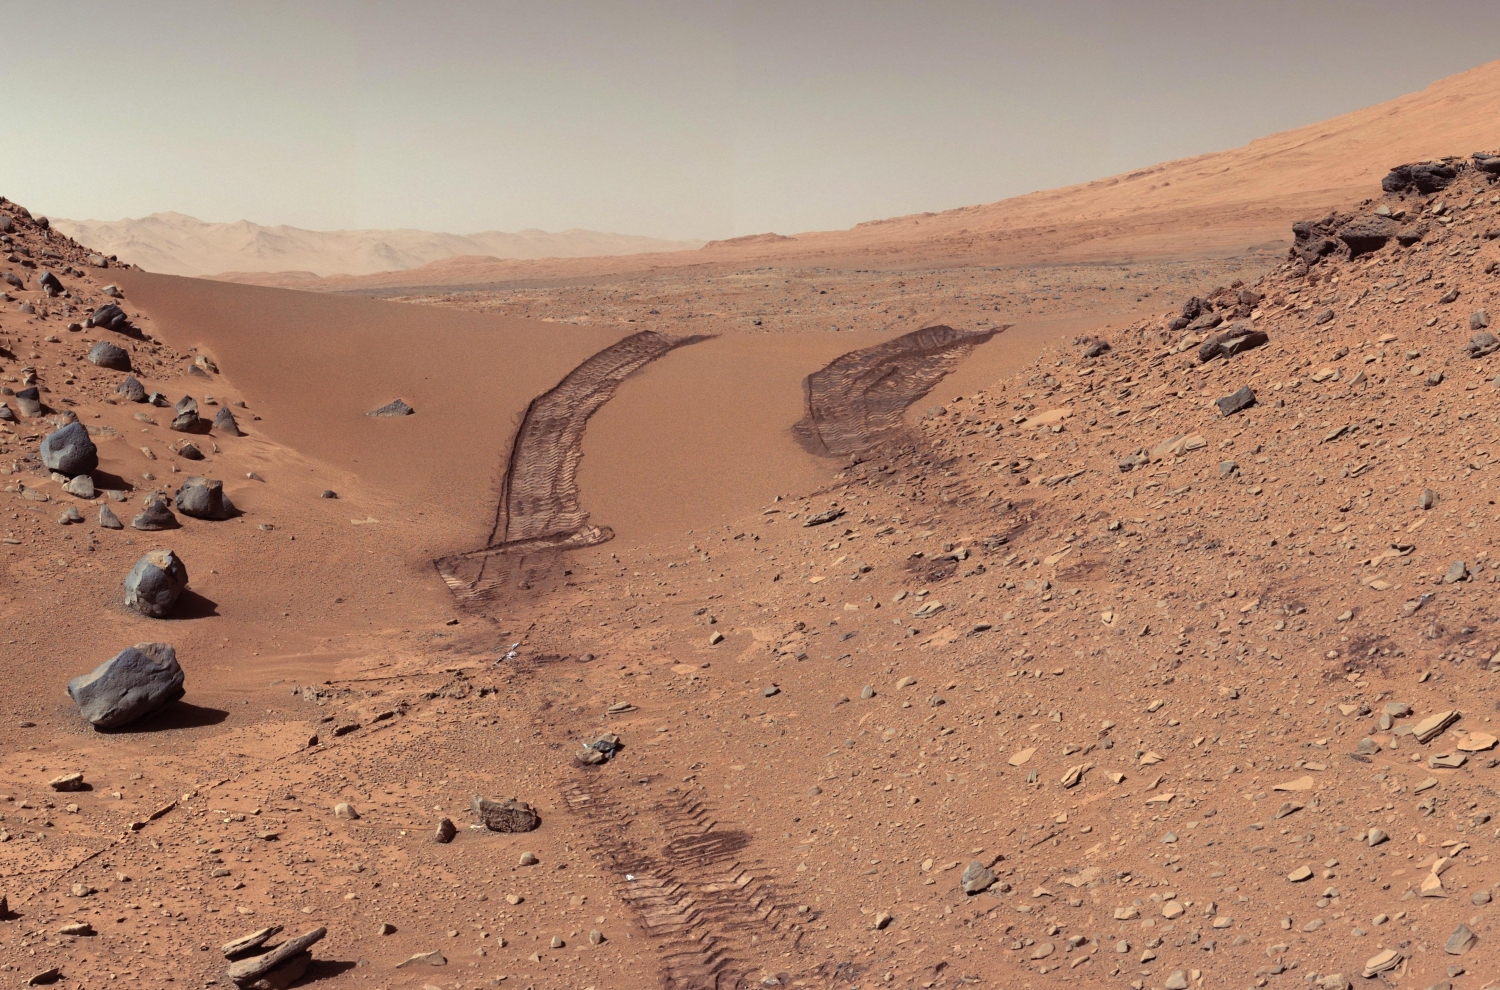 La NASA annuncia di aver battuto il record di velocità su Marte